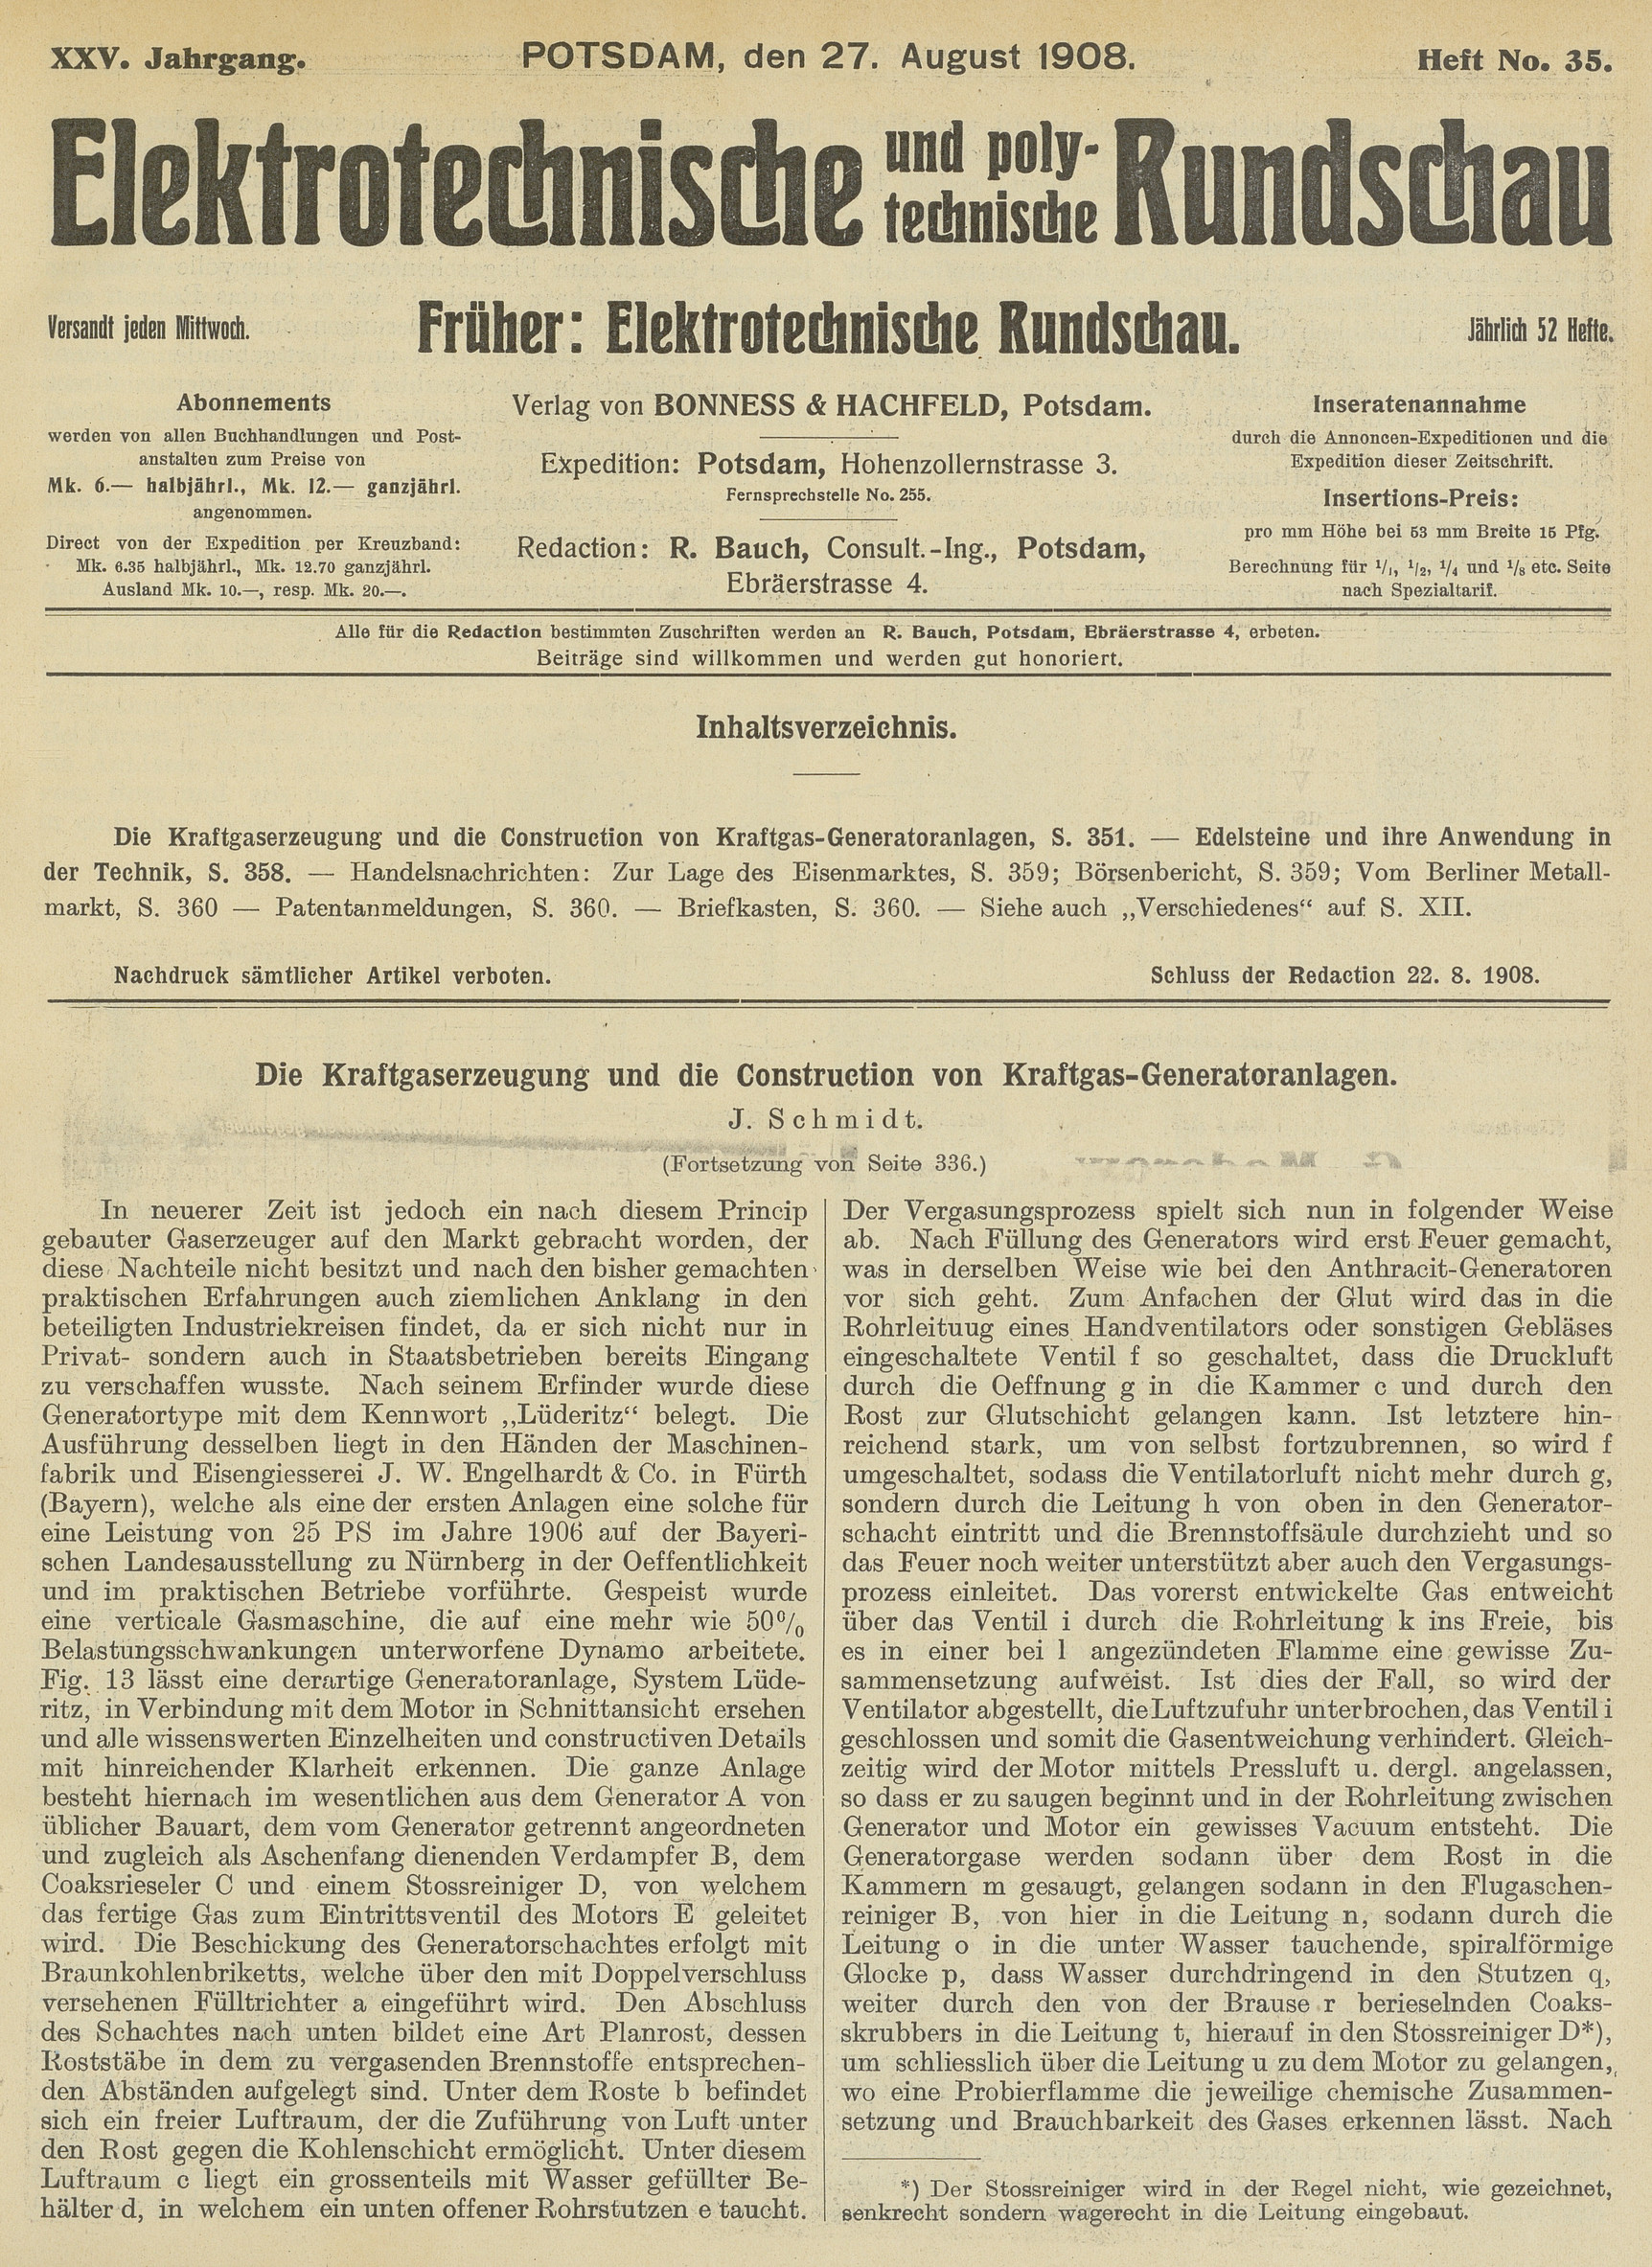 Elektrotechnische und polytechnische Rundschau, XXV. Jahrgang, Heft No. 35